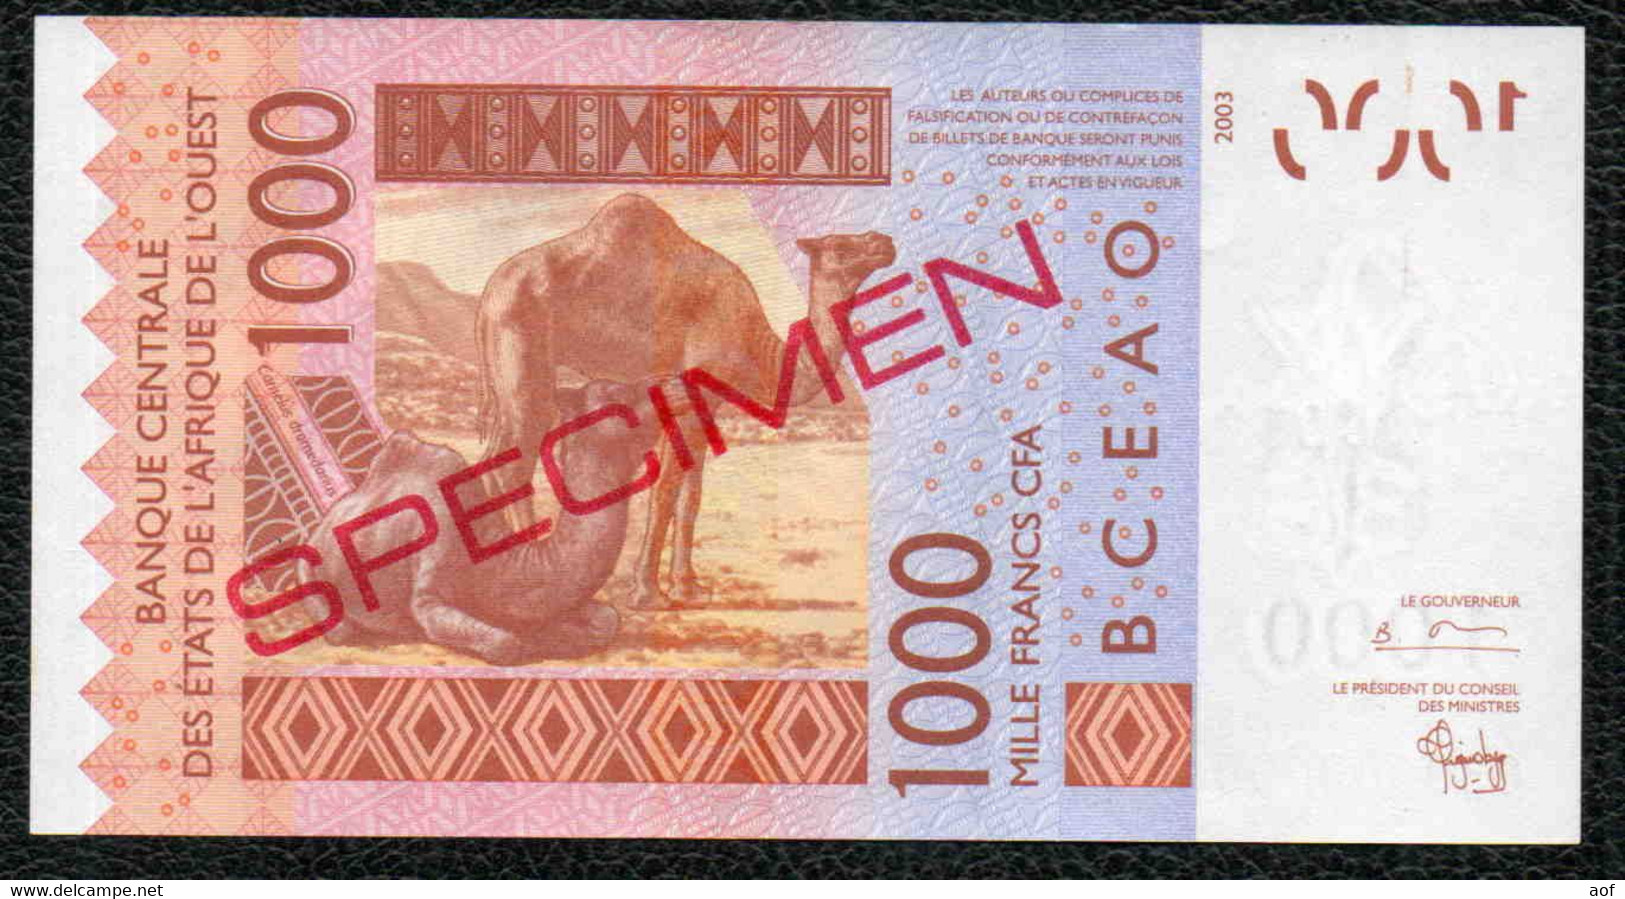 1000F CFA Spécimen BENIN - Benin